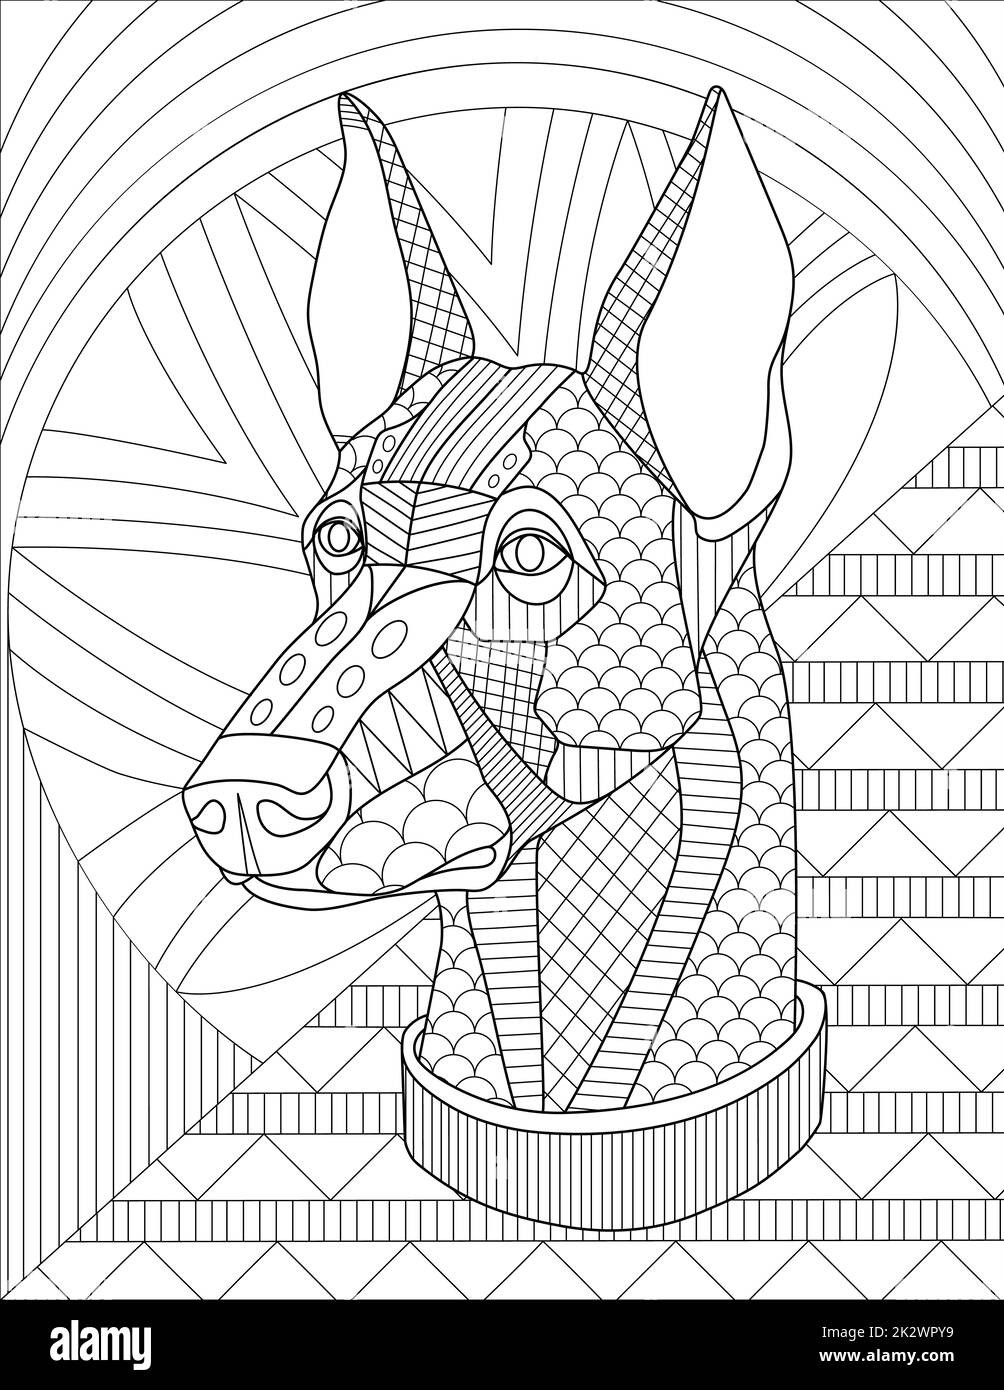 Dessin de ligne de visage de chien avec détails géométriques et cahier de coloriage d'arrière-plan de motif Banque D'Images